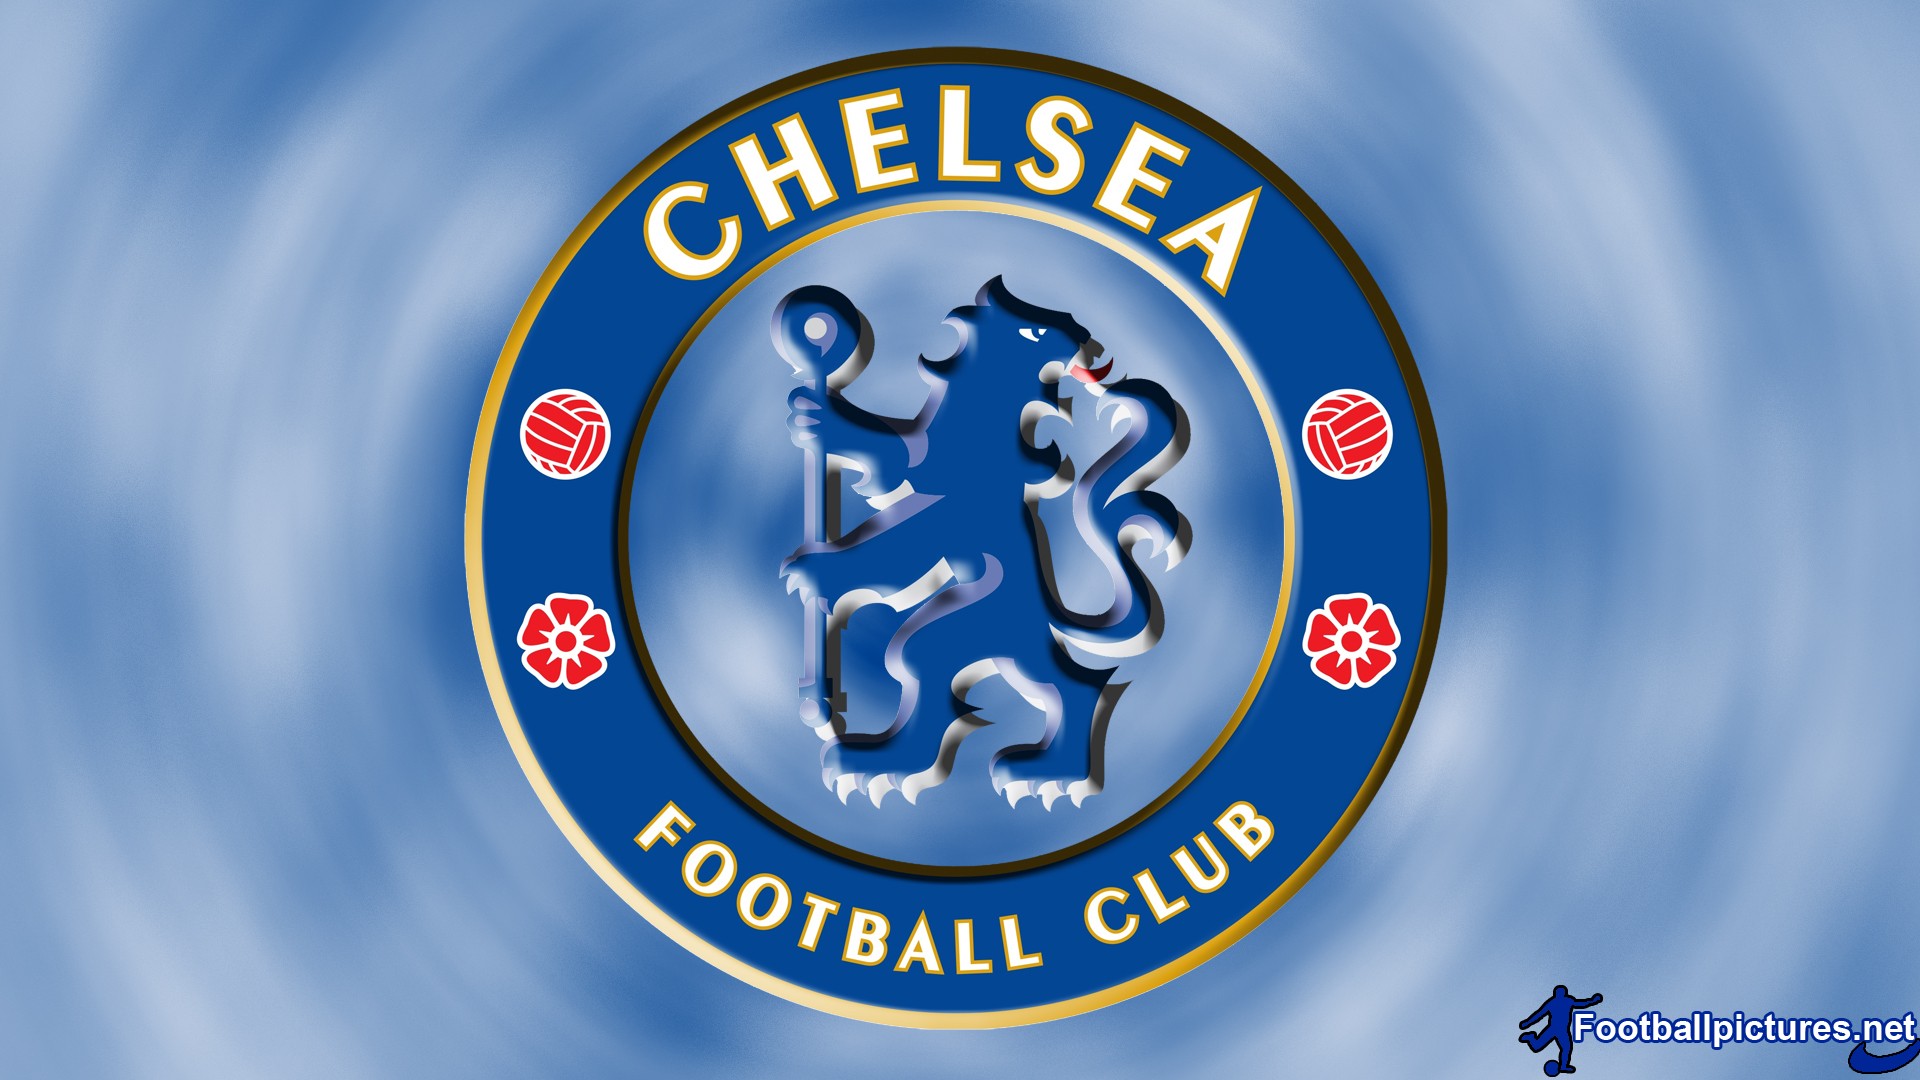 Download Gambar Lambang Chelsea Terbaru Vina Gambar - vrogue.co